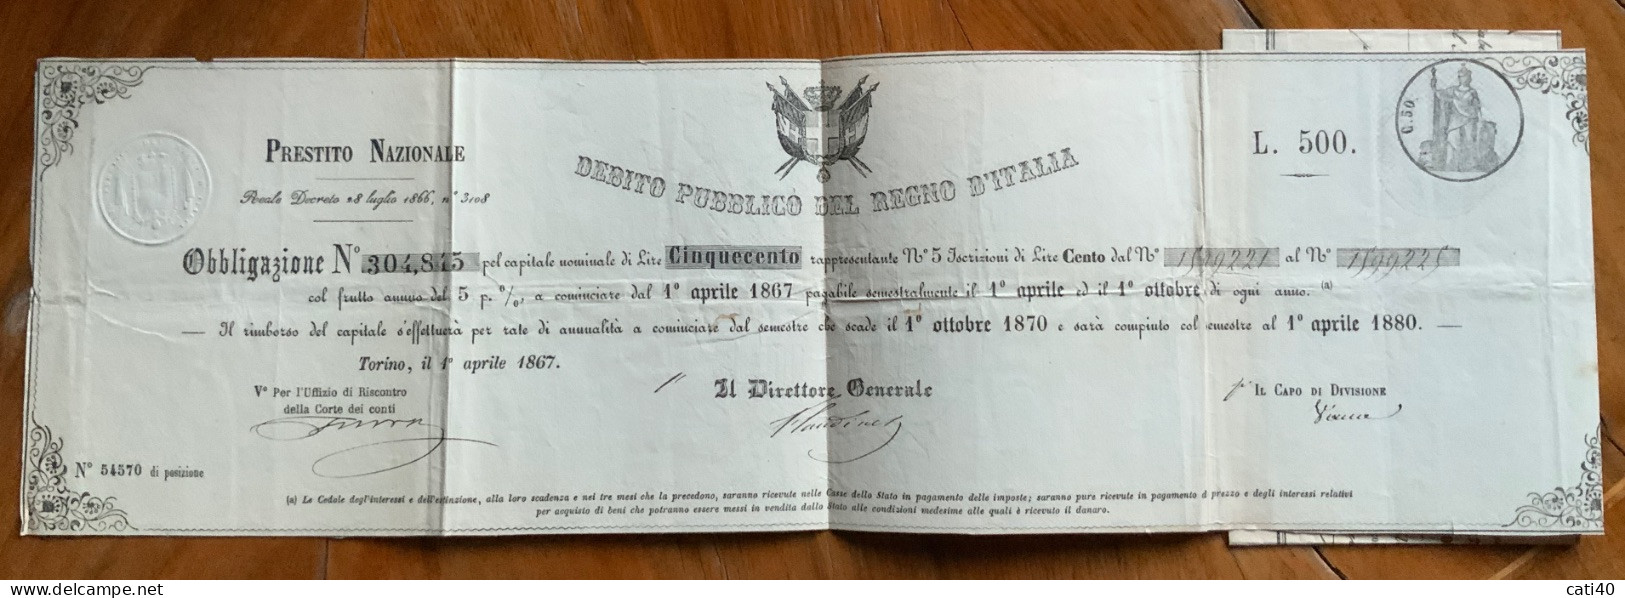 DEBITO PUBBLICO DEL REGNO D'ITALIA - PRESTITO NAZIONALE 1867  - OBBLIGAZIONE \ L. 500 - Verkehr & Transport